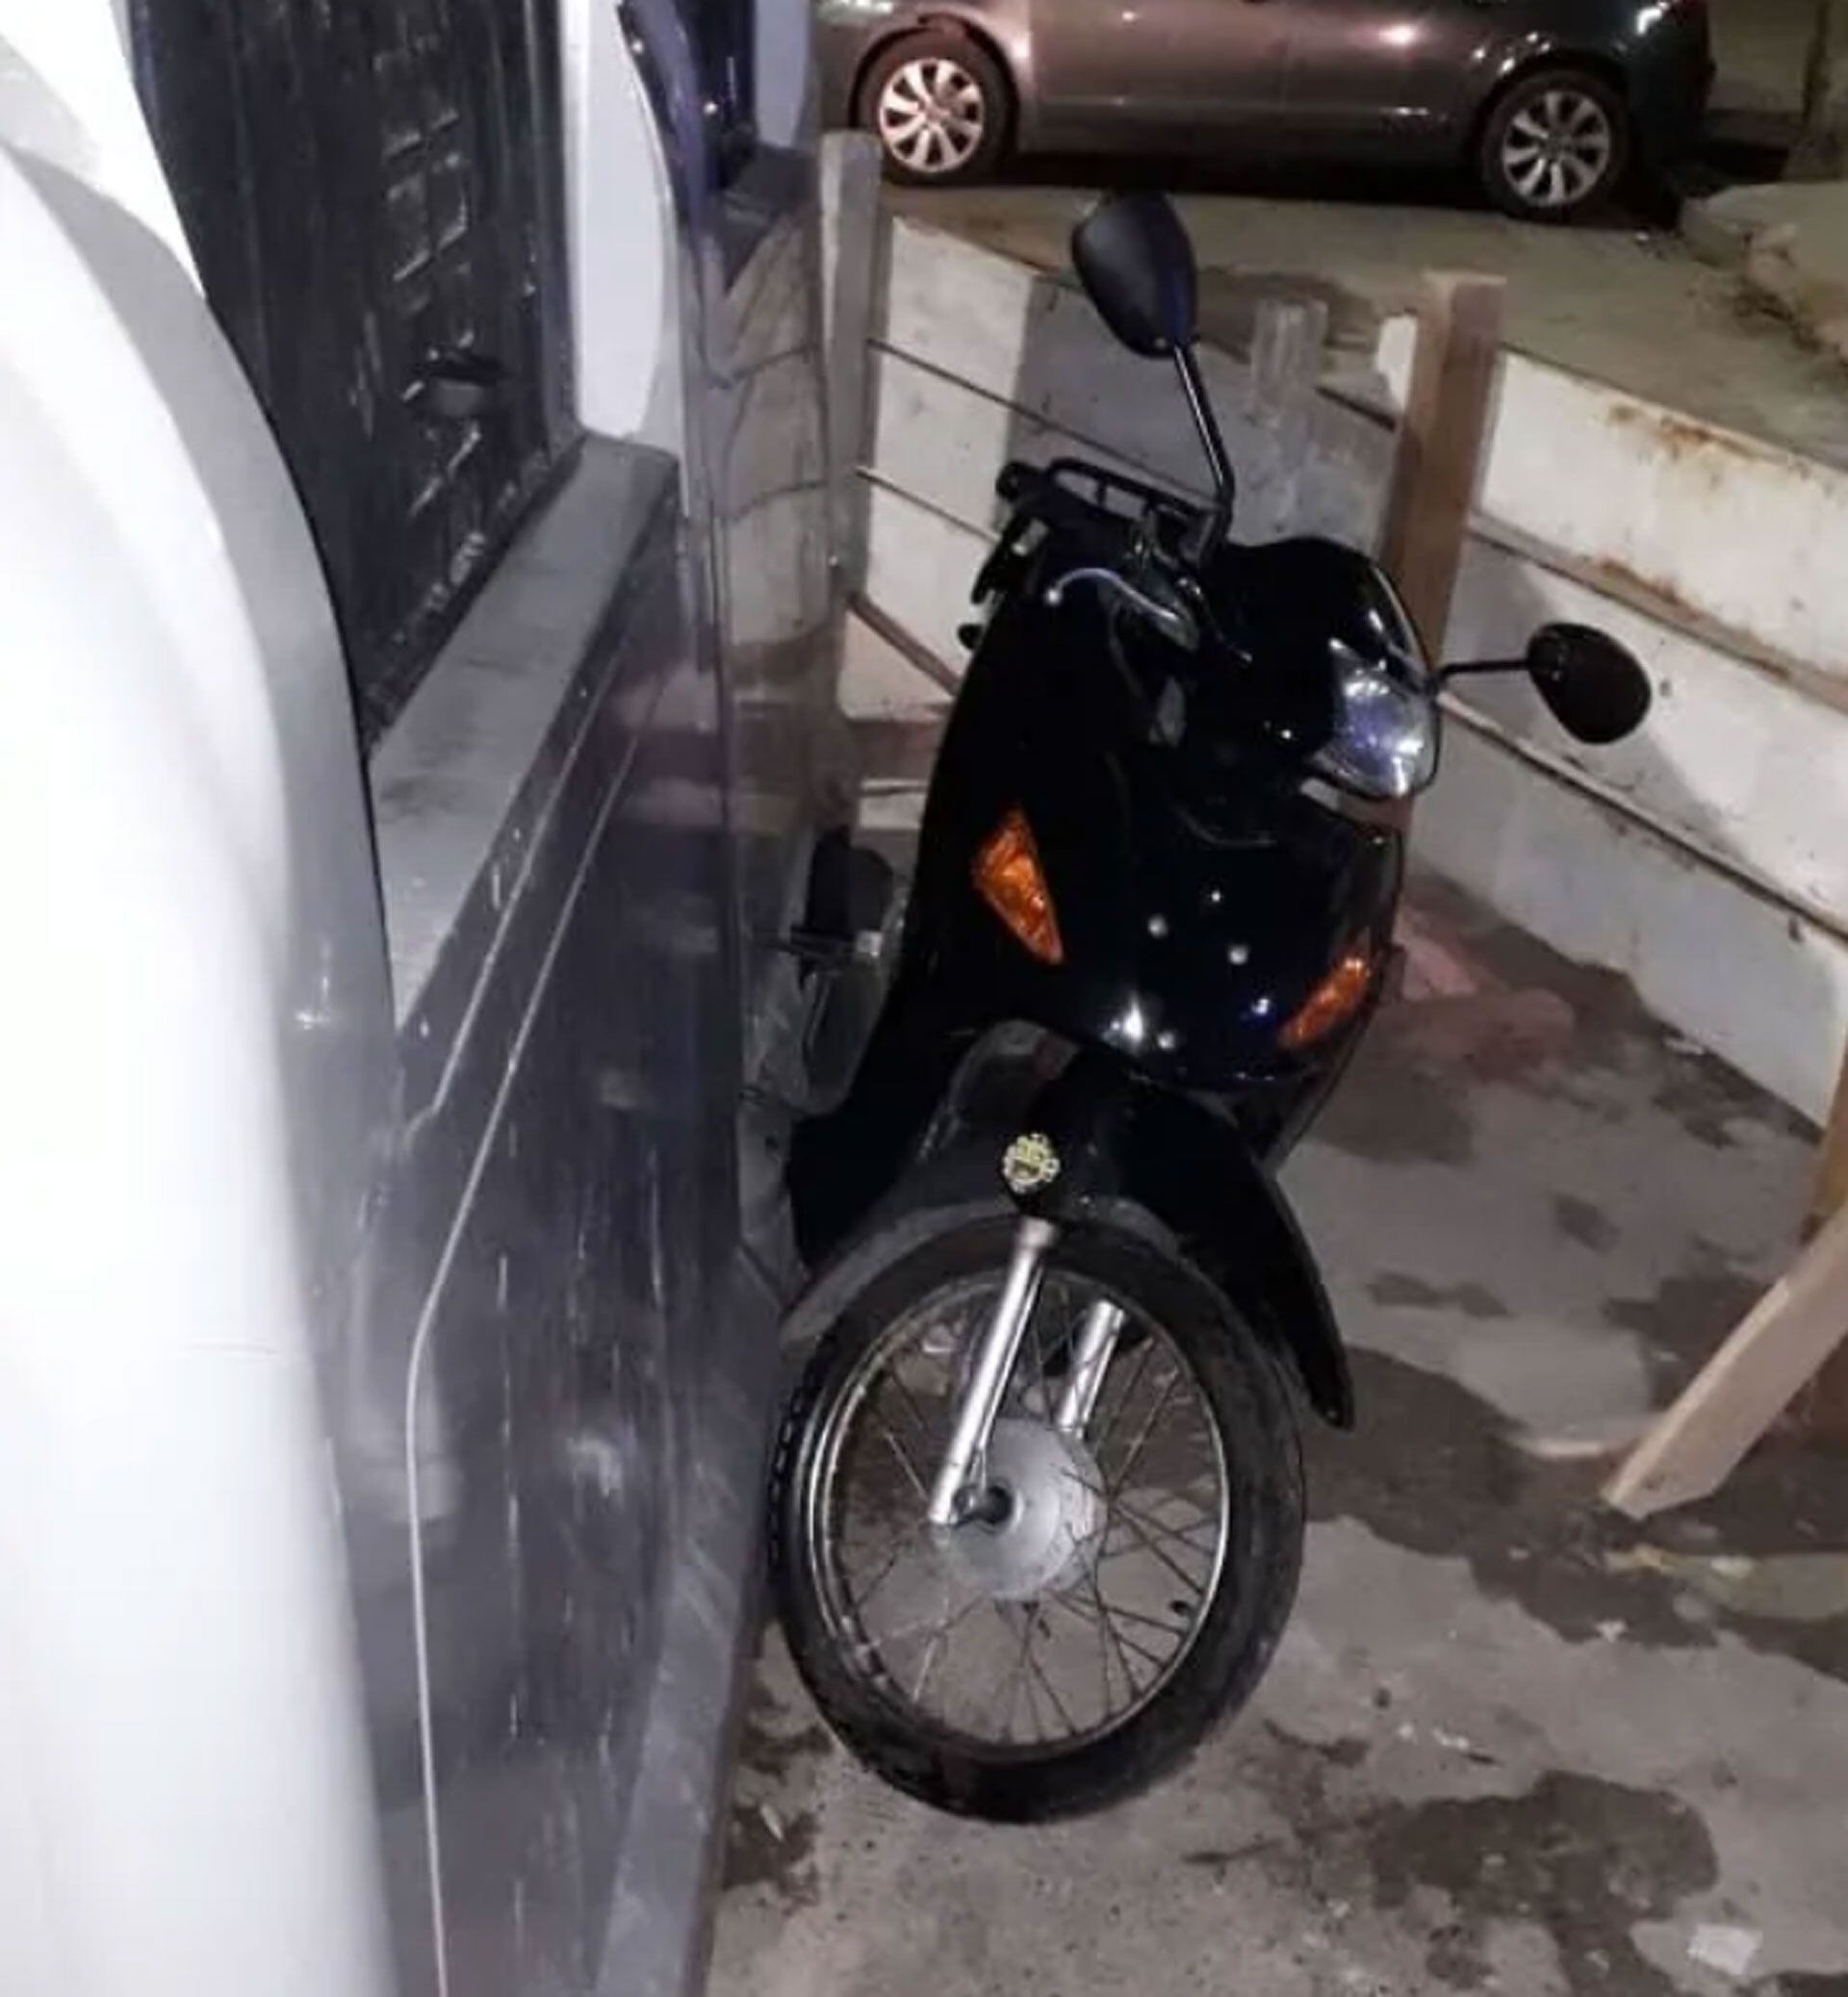 La moto Honda que intentaron robar los menores